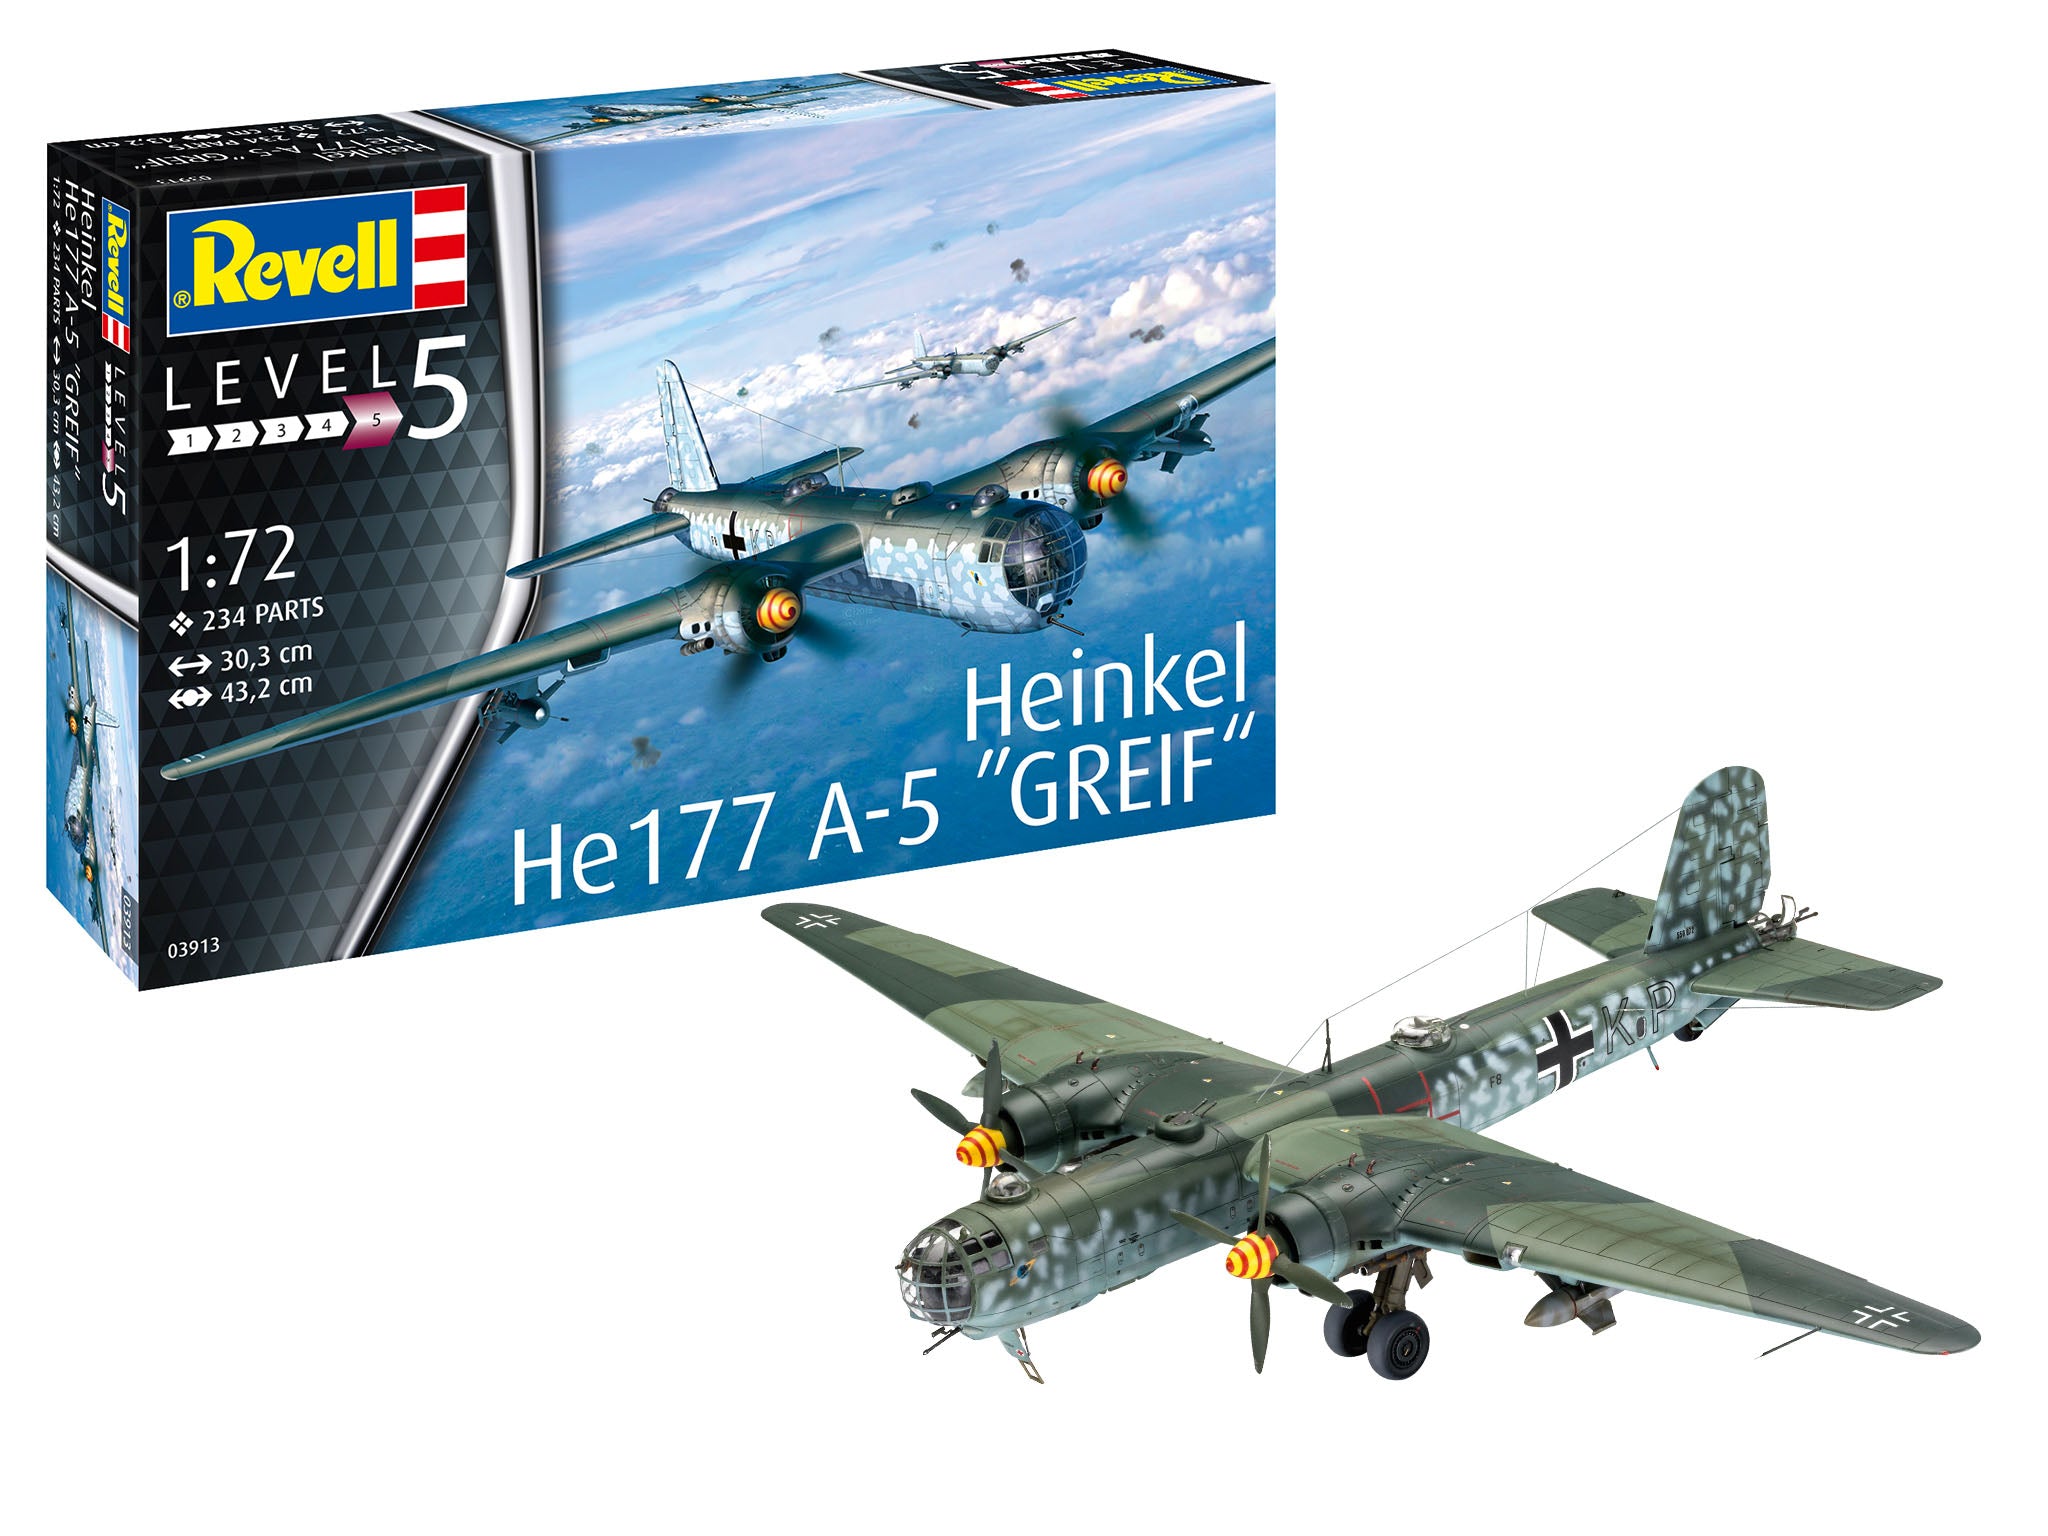 Plane Model Kit Revell Heinkel He177 A-5 Greif 1:72